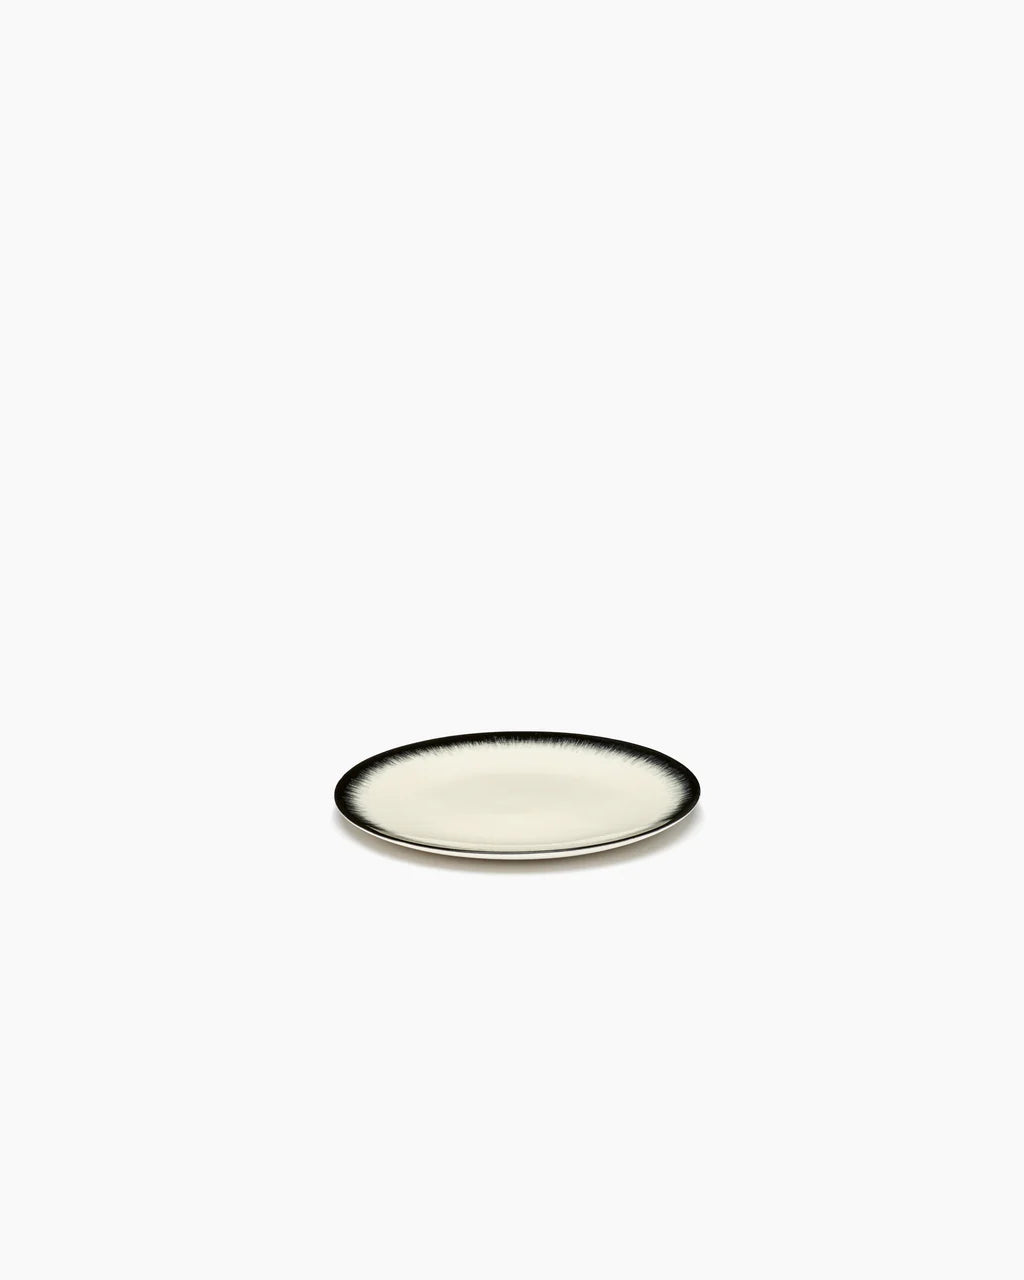 Dessertbord wit/zwart variatie 3 -  Ann Demeulemeester